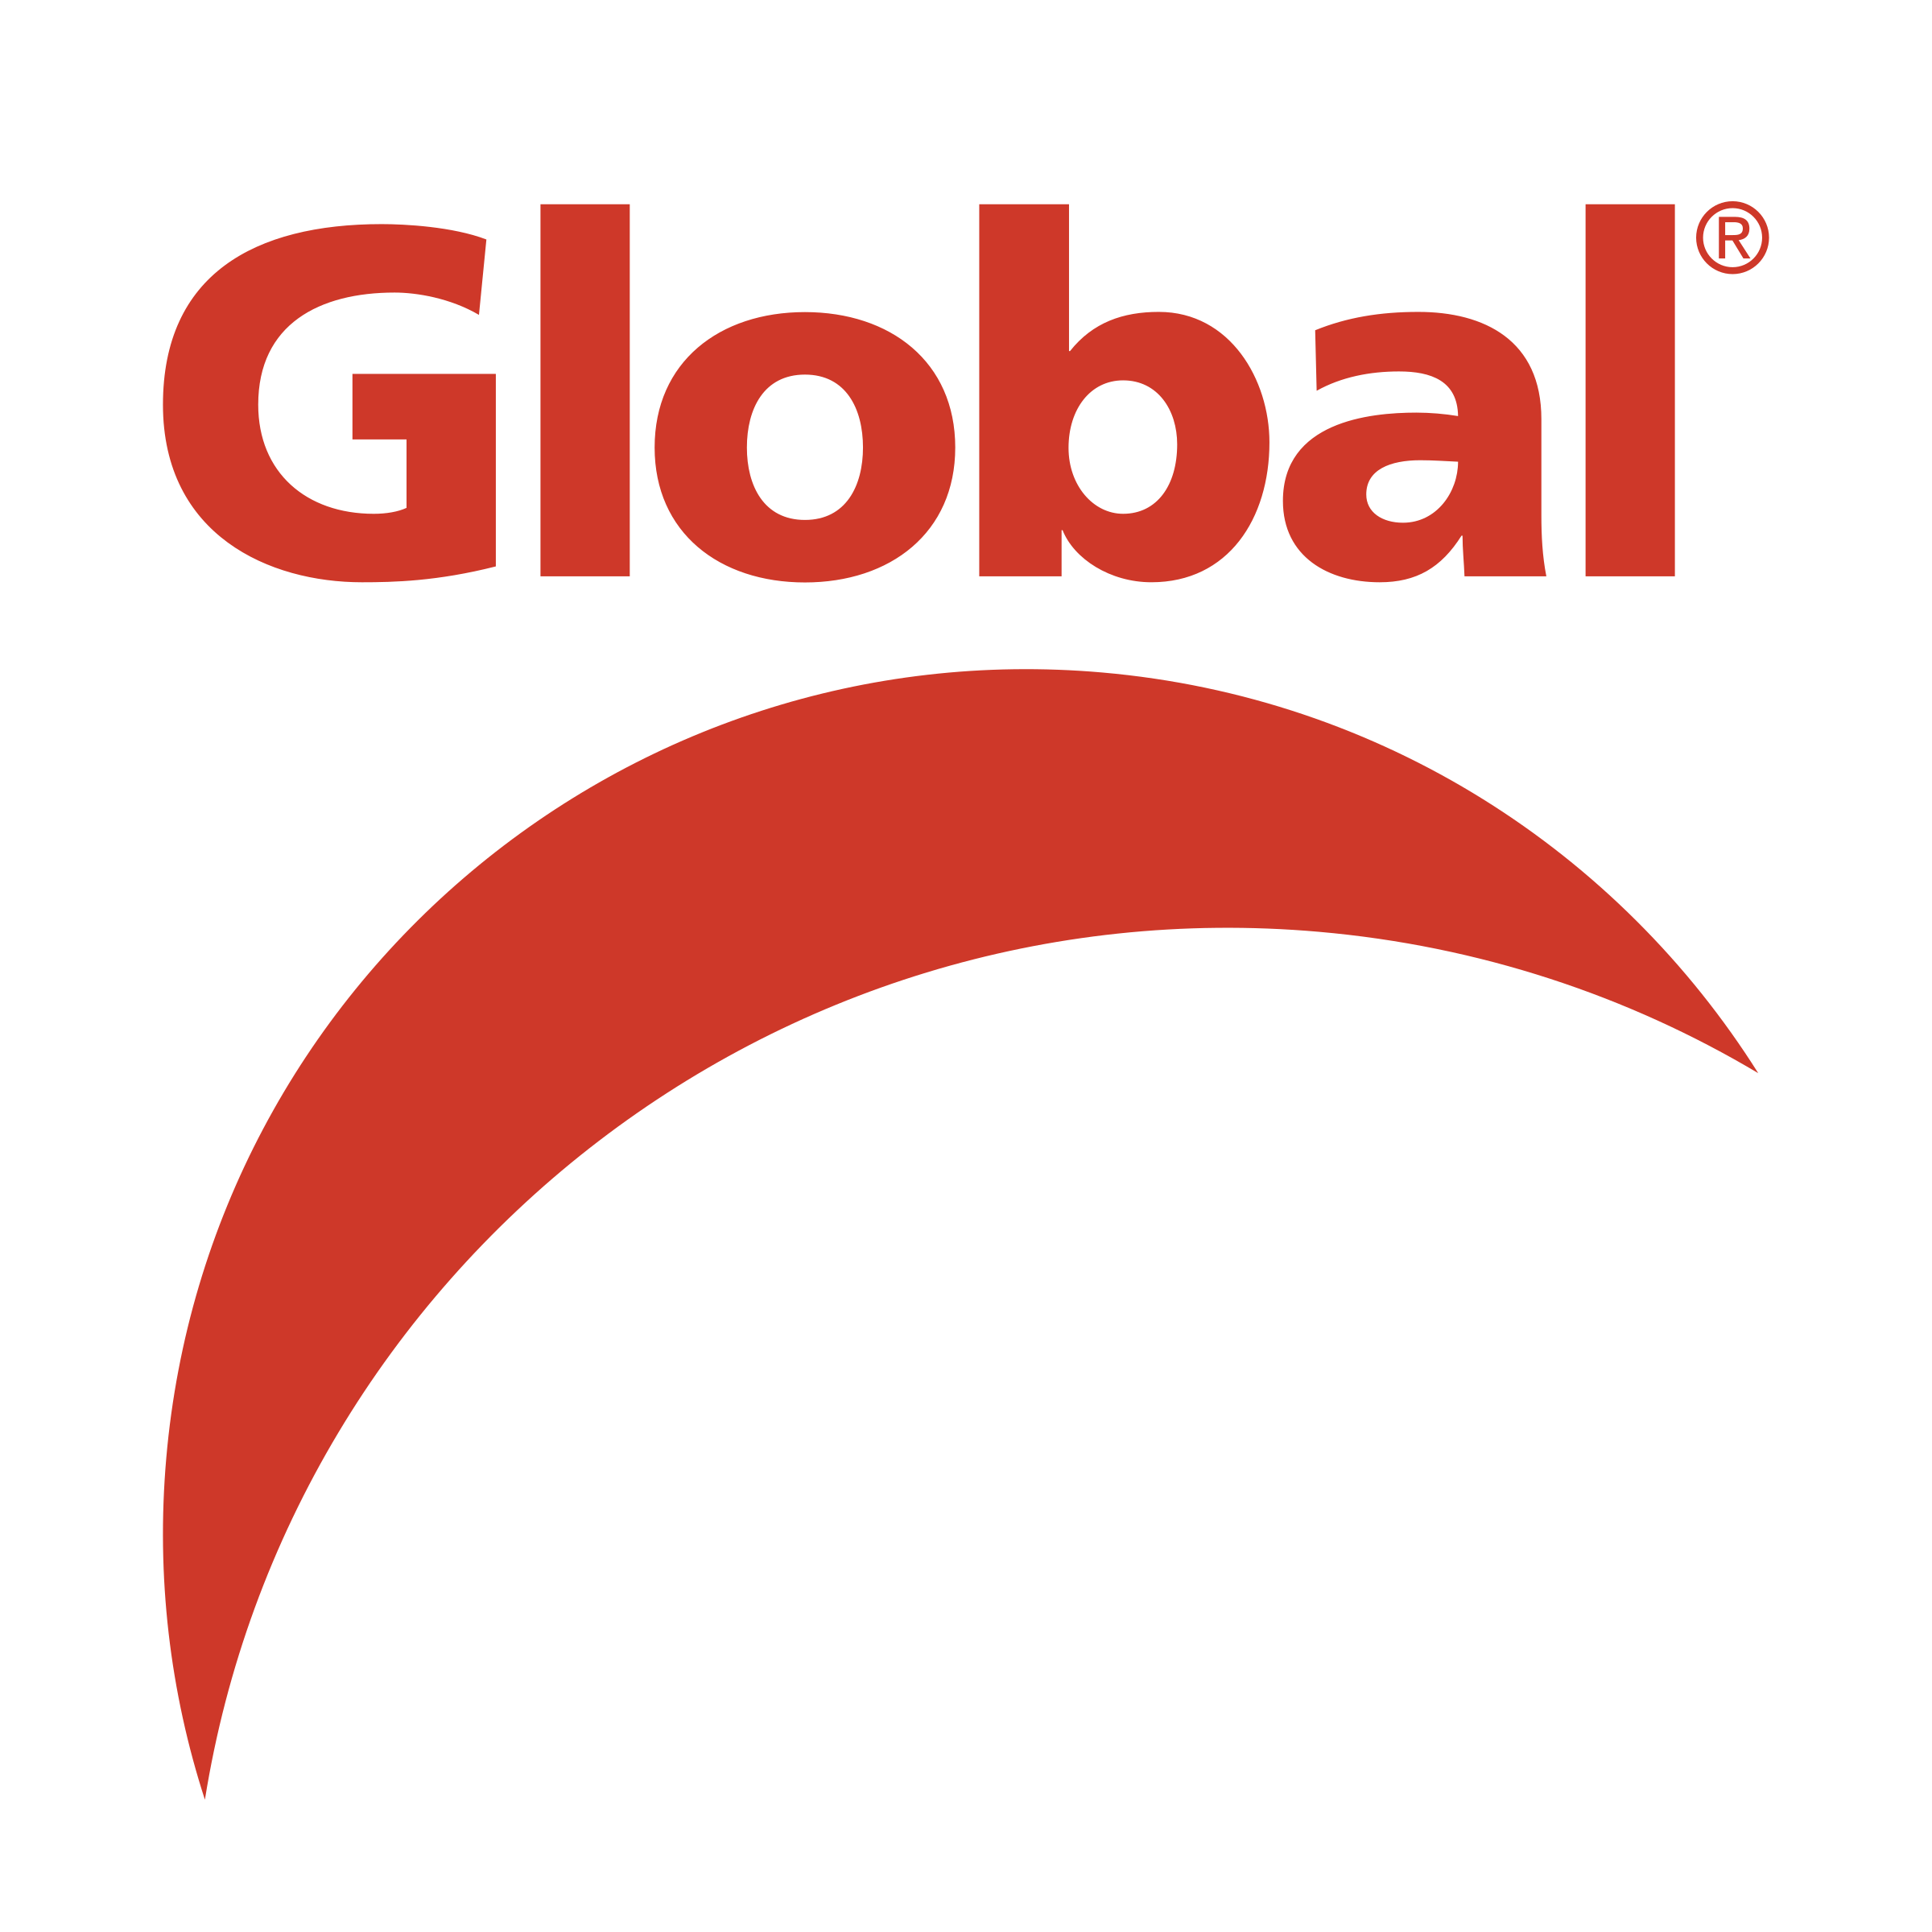 Global TV Logo - Global Television Network Logo PNG Transparent & SVG Vector